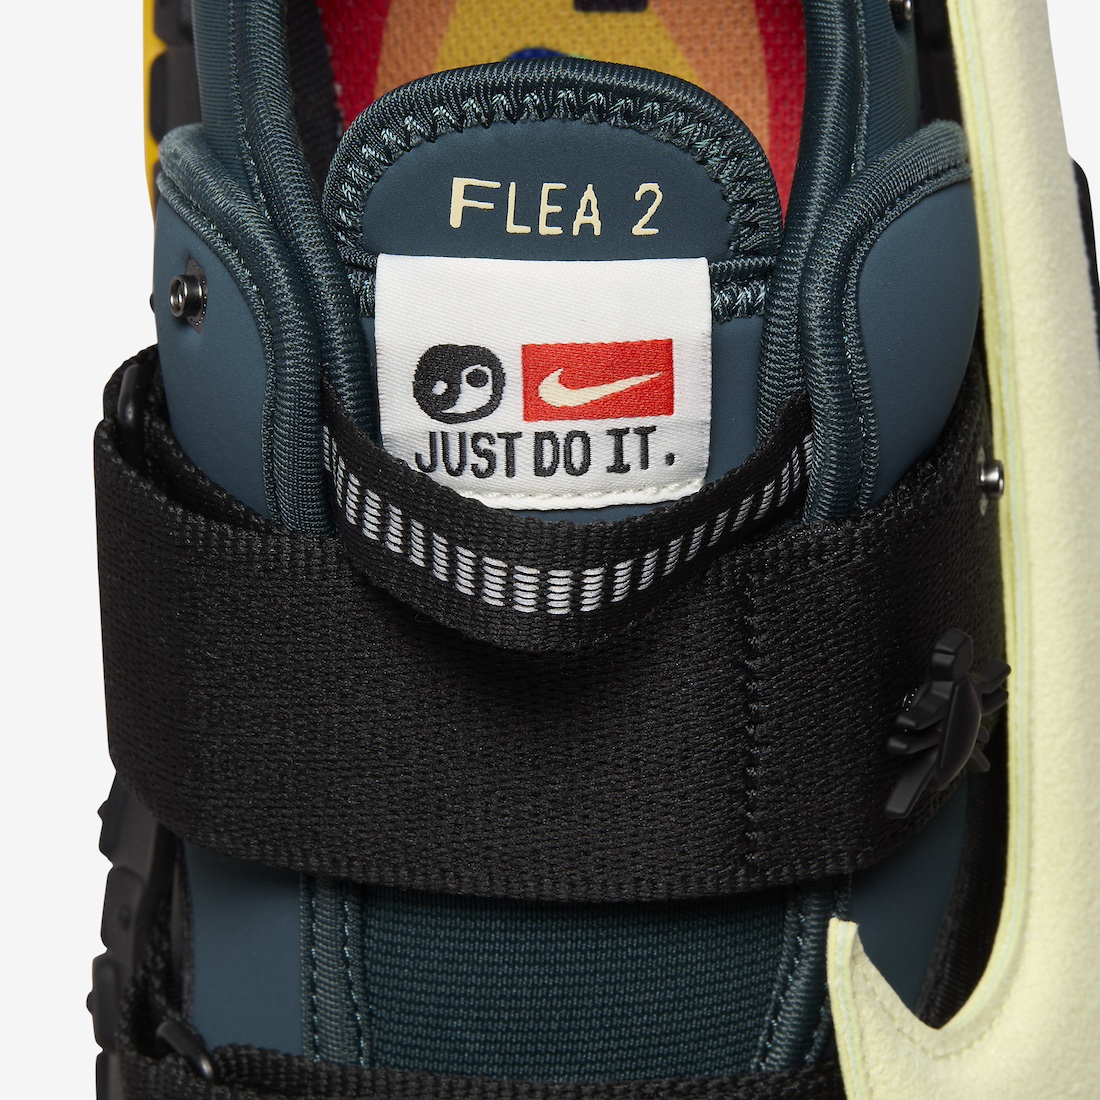 Nike CPFM Air Flea 2 Faded Spruce DV7164 300 Release Date 9